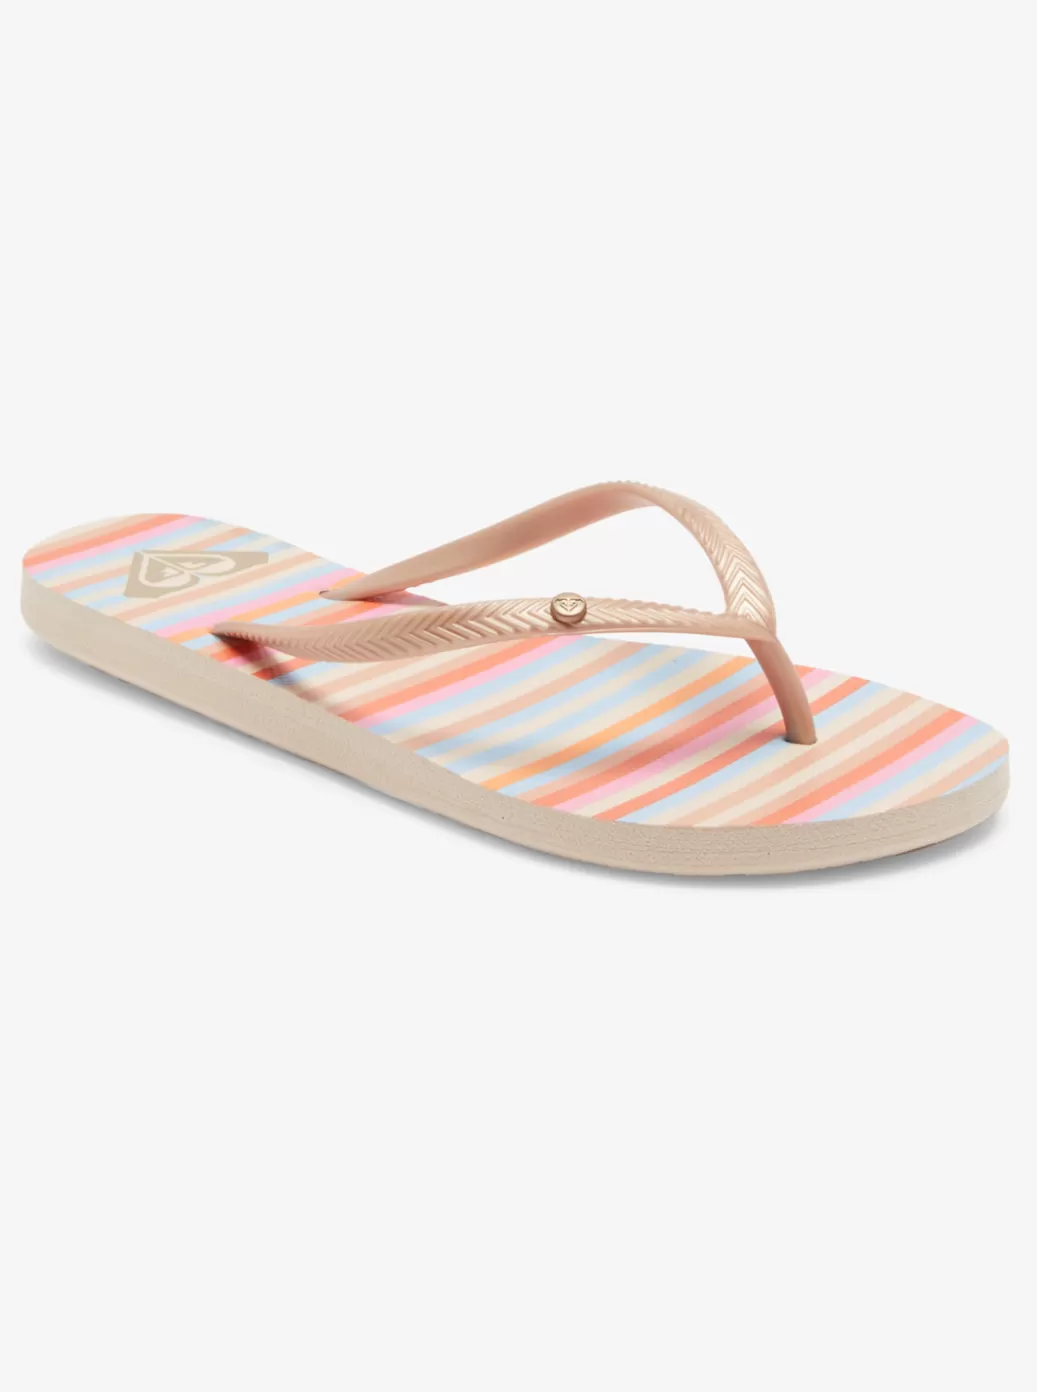 Flip Flops | WOMEN ROXY Bermuda Sandals Champagne Stripe